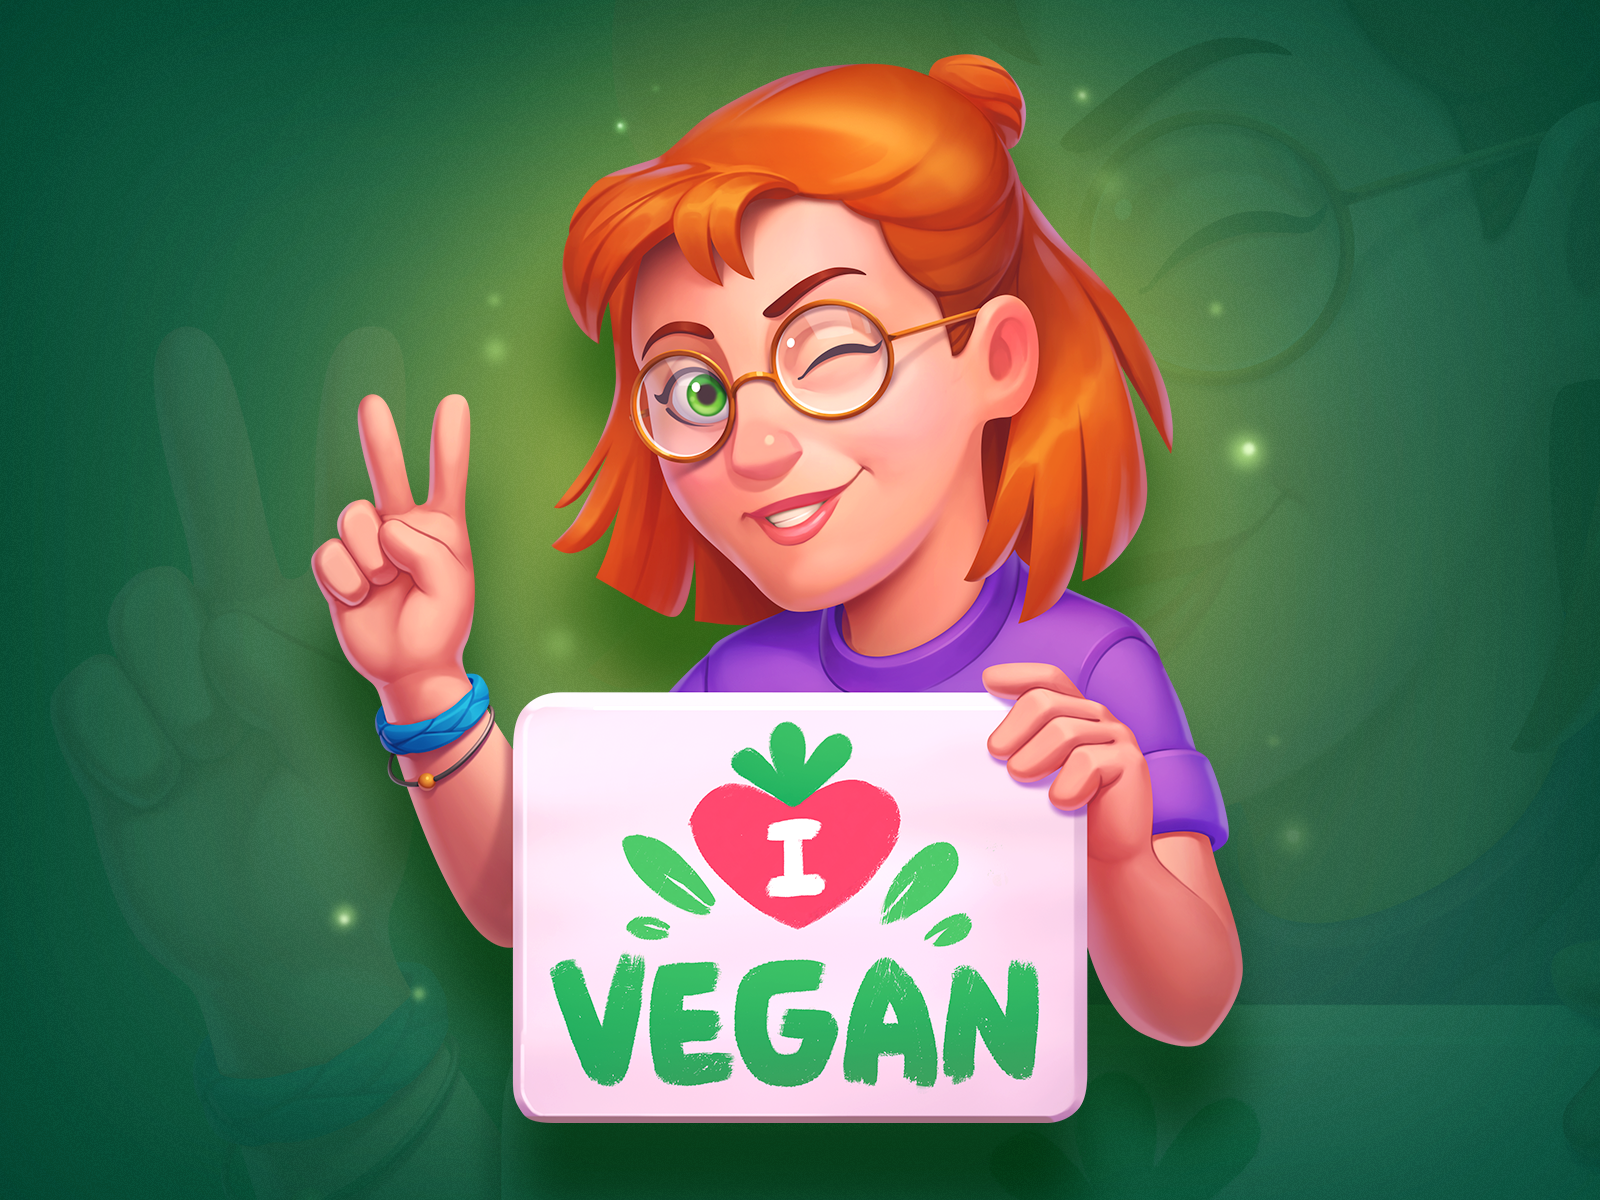 I ❤️ Vegan art artist casino character gambling game girl hipster icon illustration nft sign slot symbol vegan